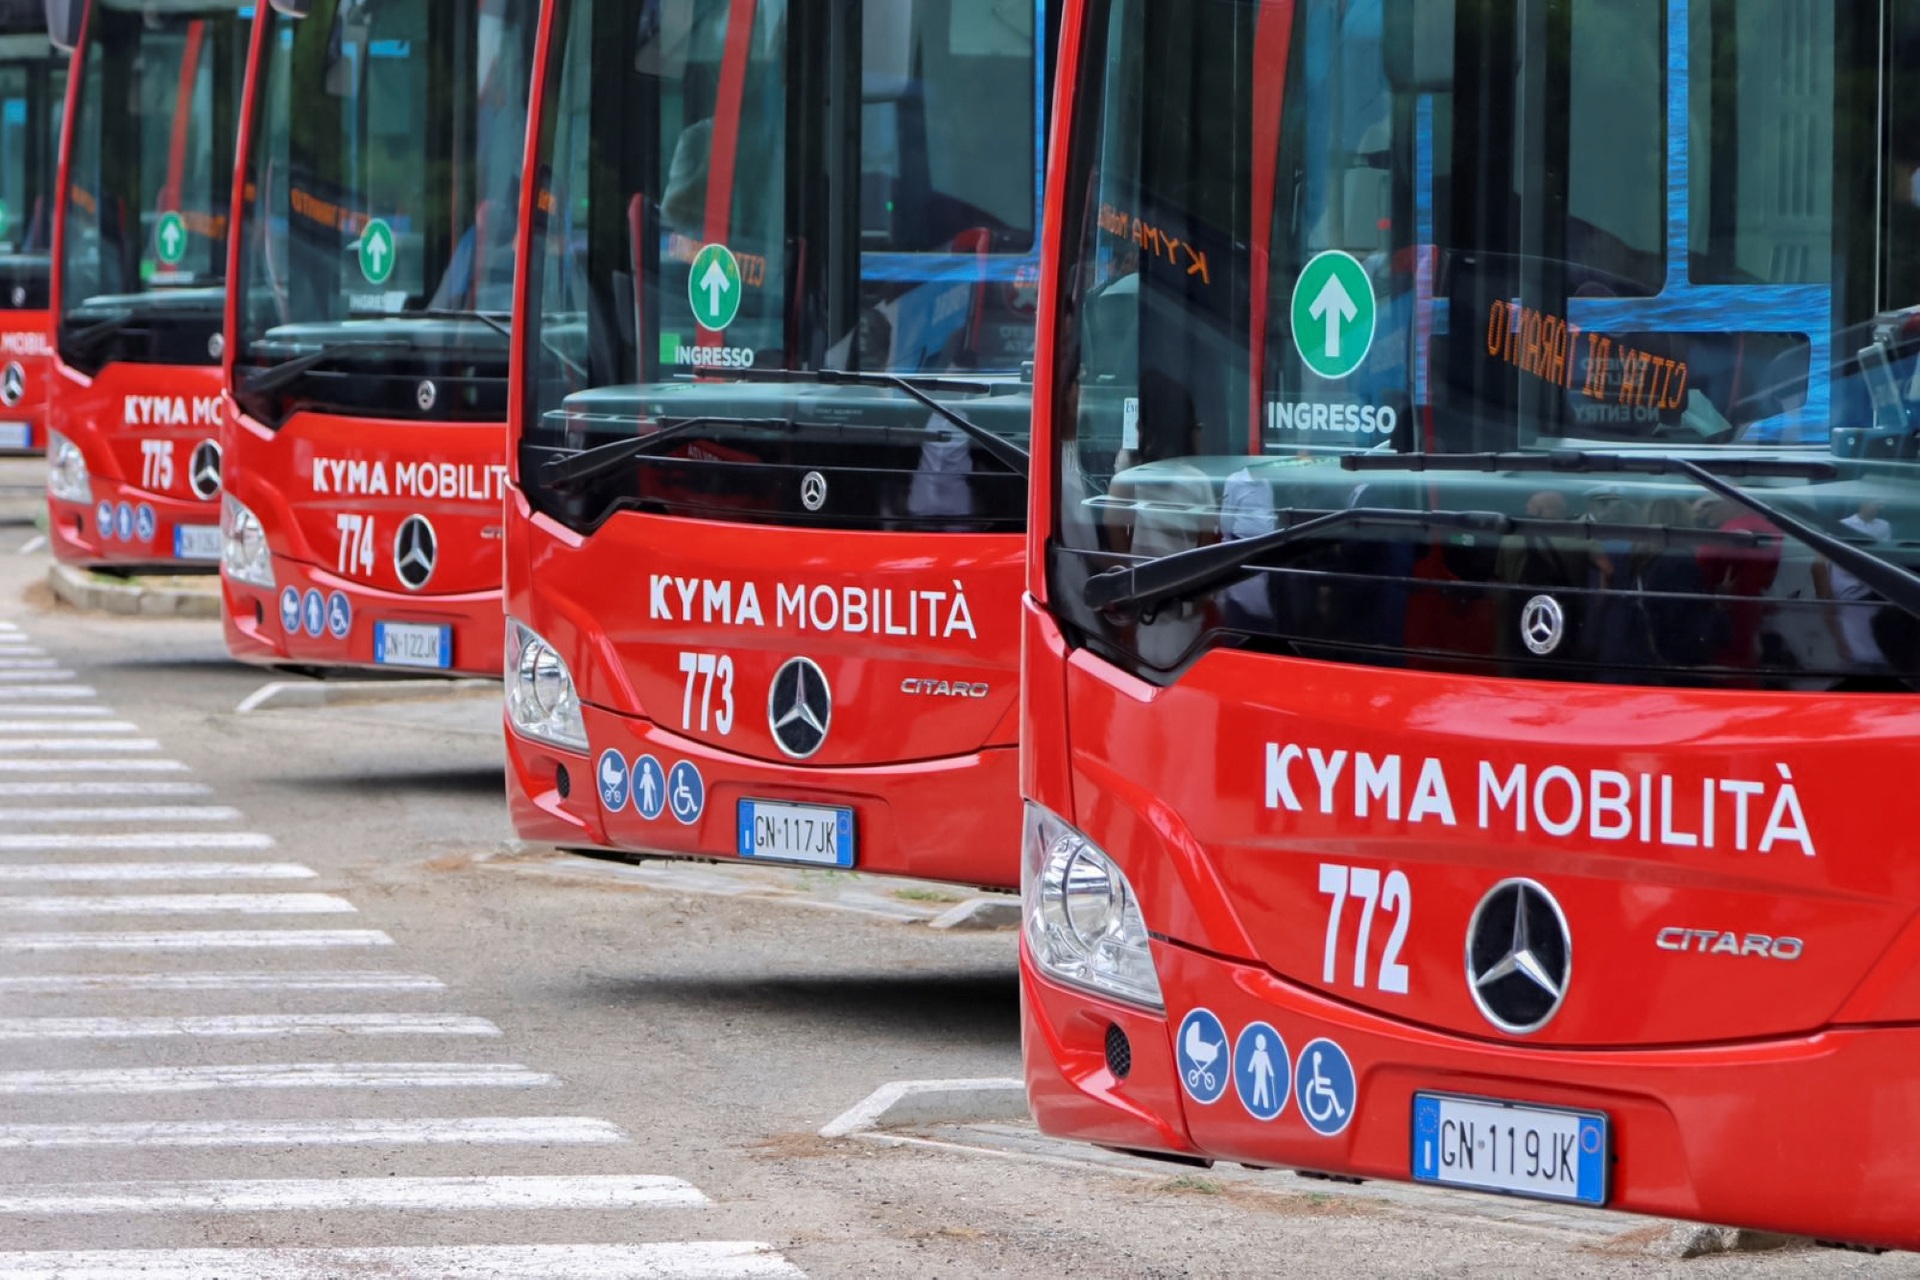 Elektrifizierter ÖPNV in Italien: 56 Mercedes-Benz Citaro hybrid für Kyma Mobilità in Tarent